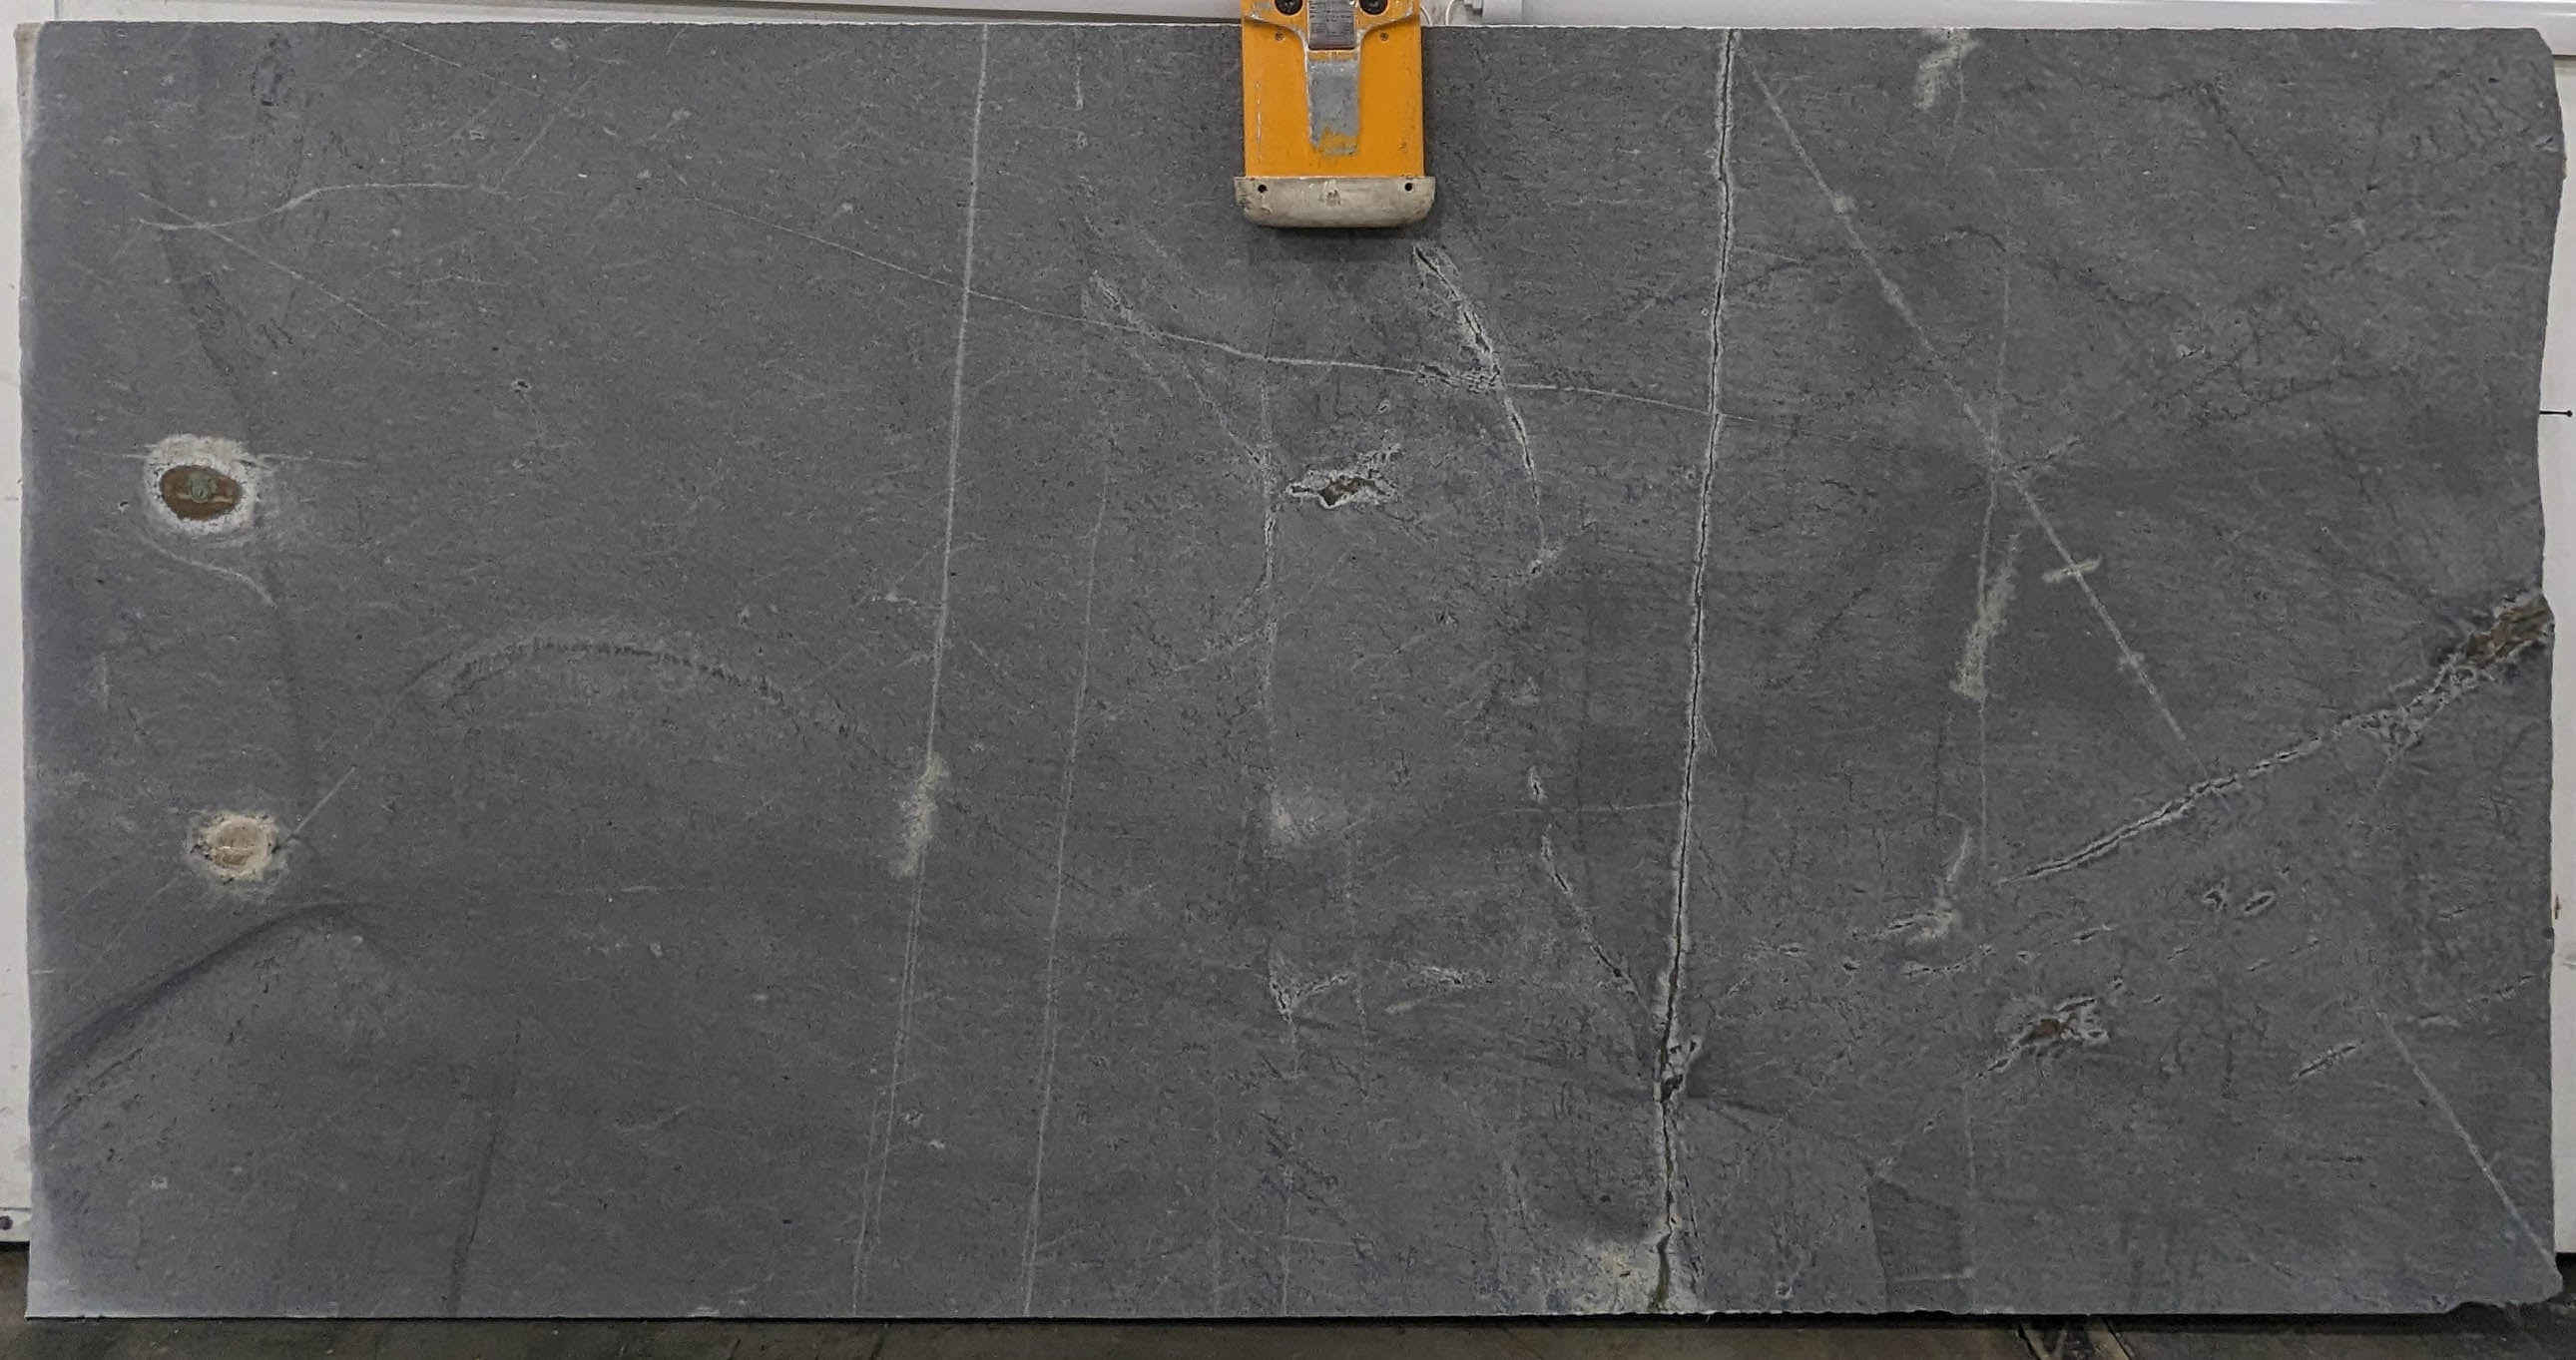 Elberton Gray Granite Sample - Honed/Thermal